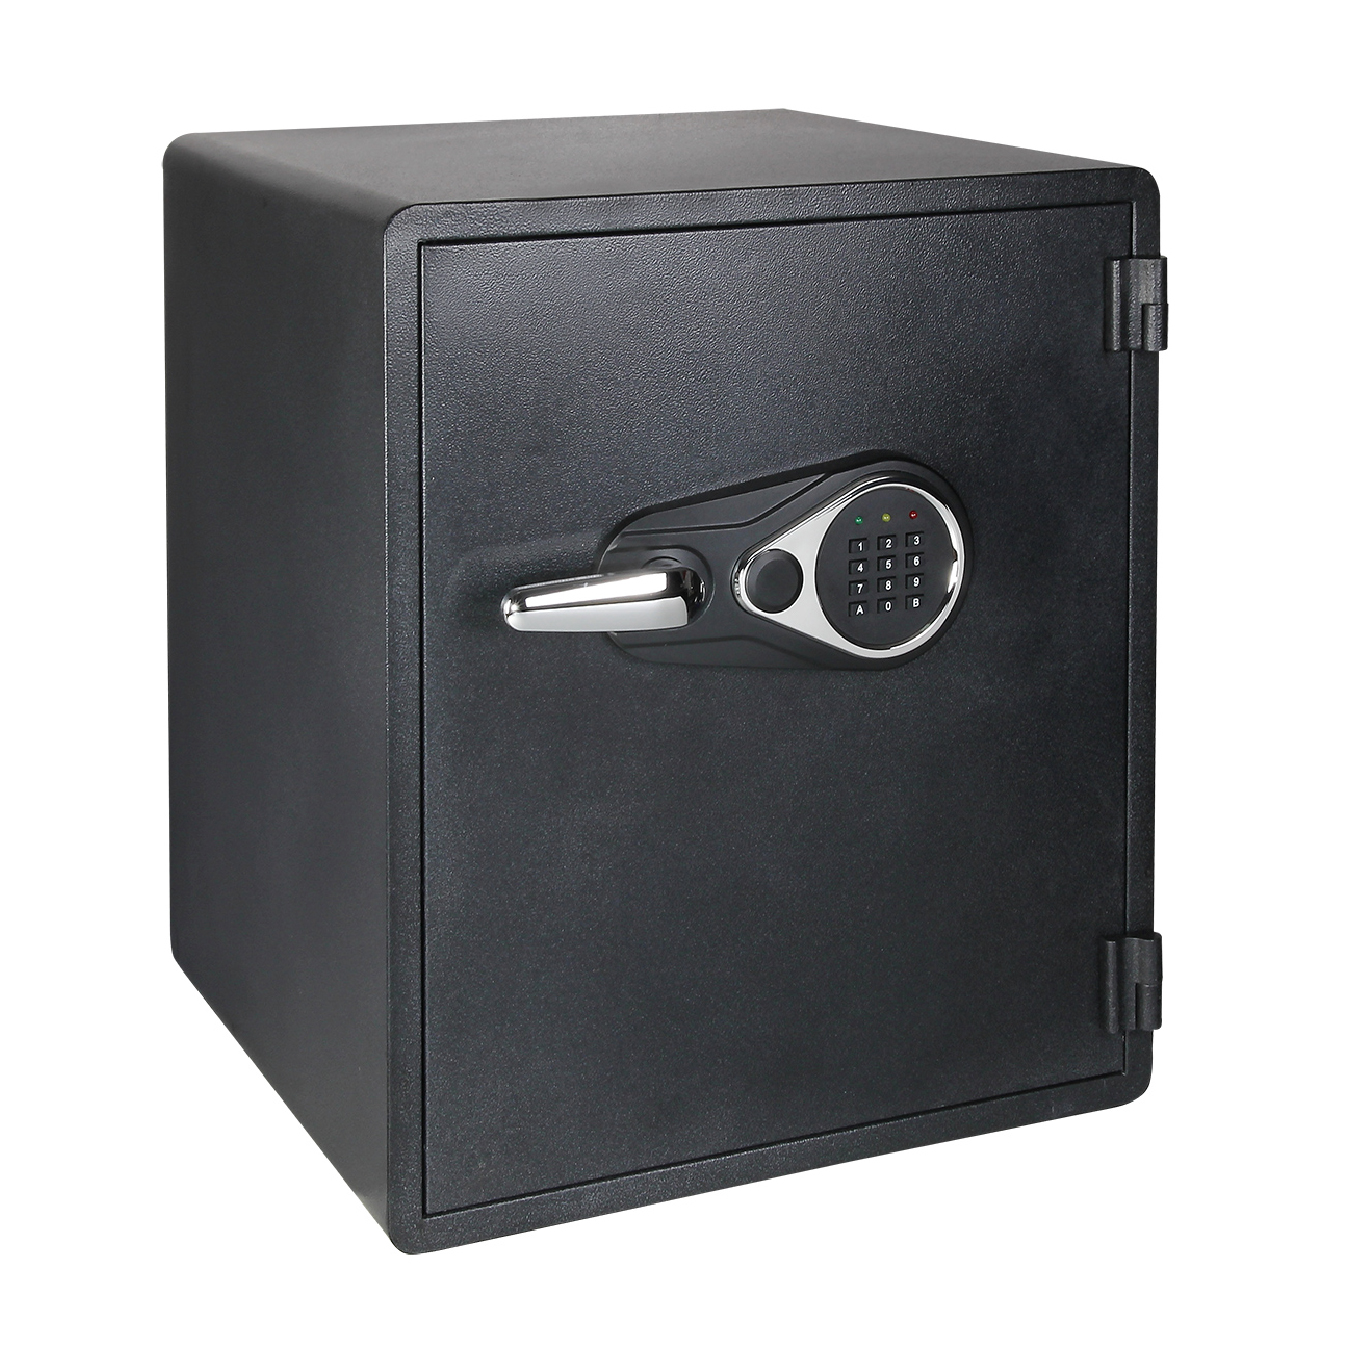 Fire Safe, Digital Lock, 1 Removable Shelf, 1 Drawer, Black Color, SWF2420